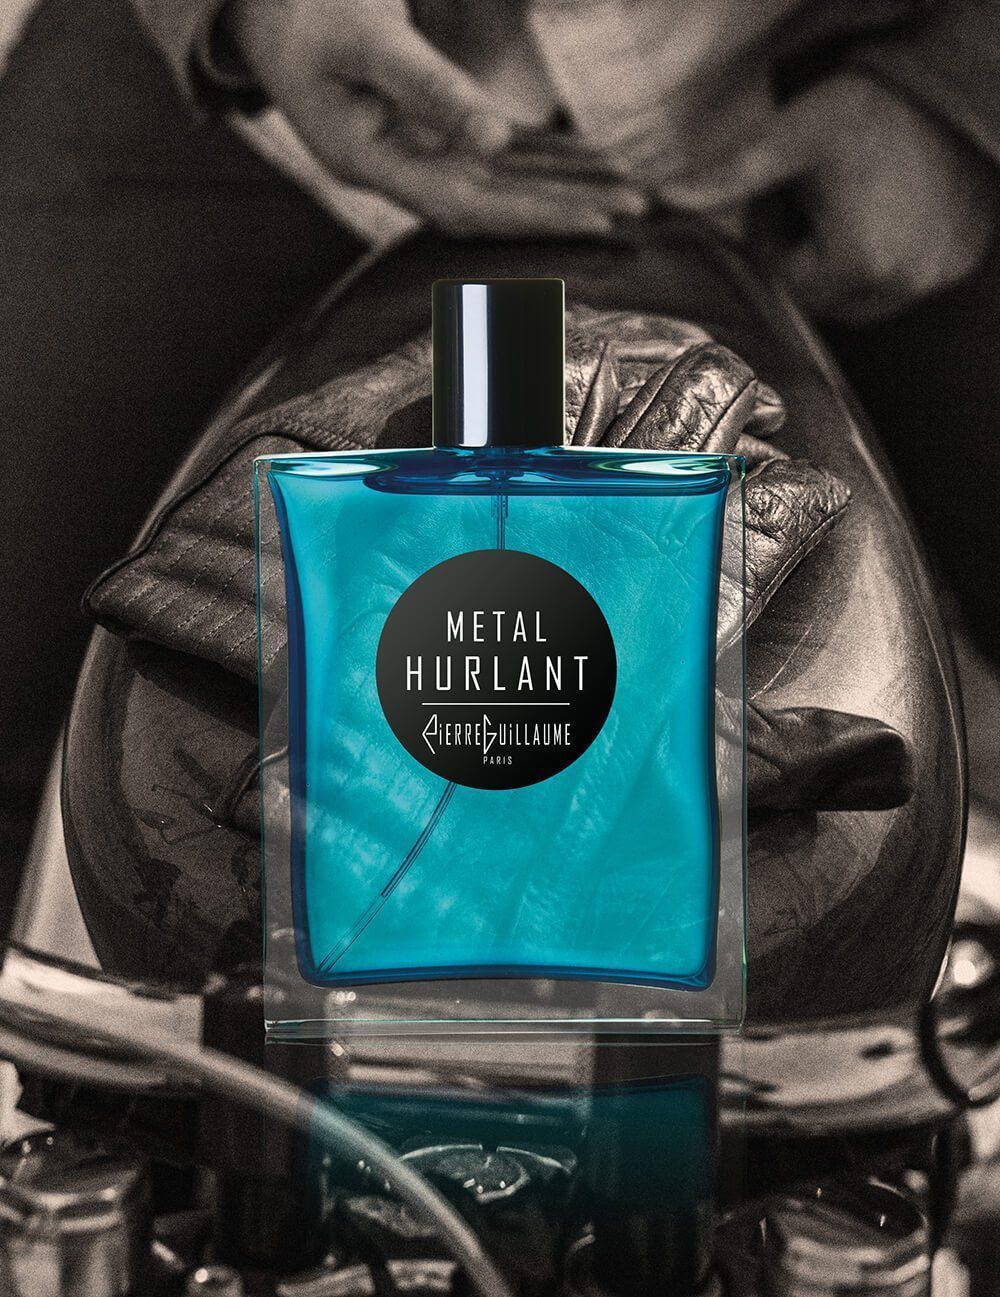 Metal Hurlant-eau de parfum-Pierre Guillaume - Croisiere-Perfume Lounge